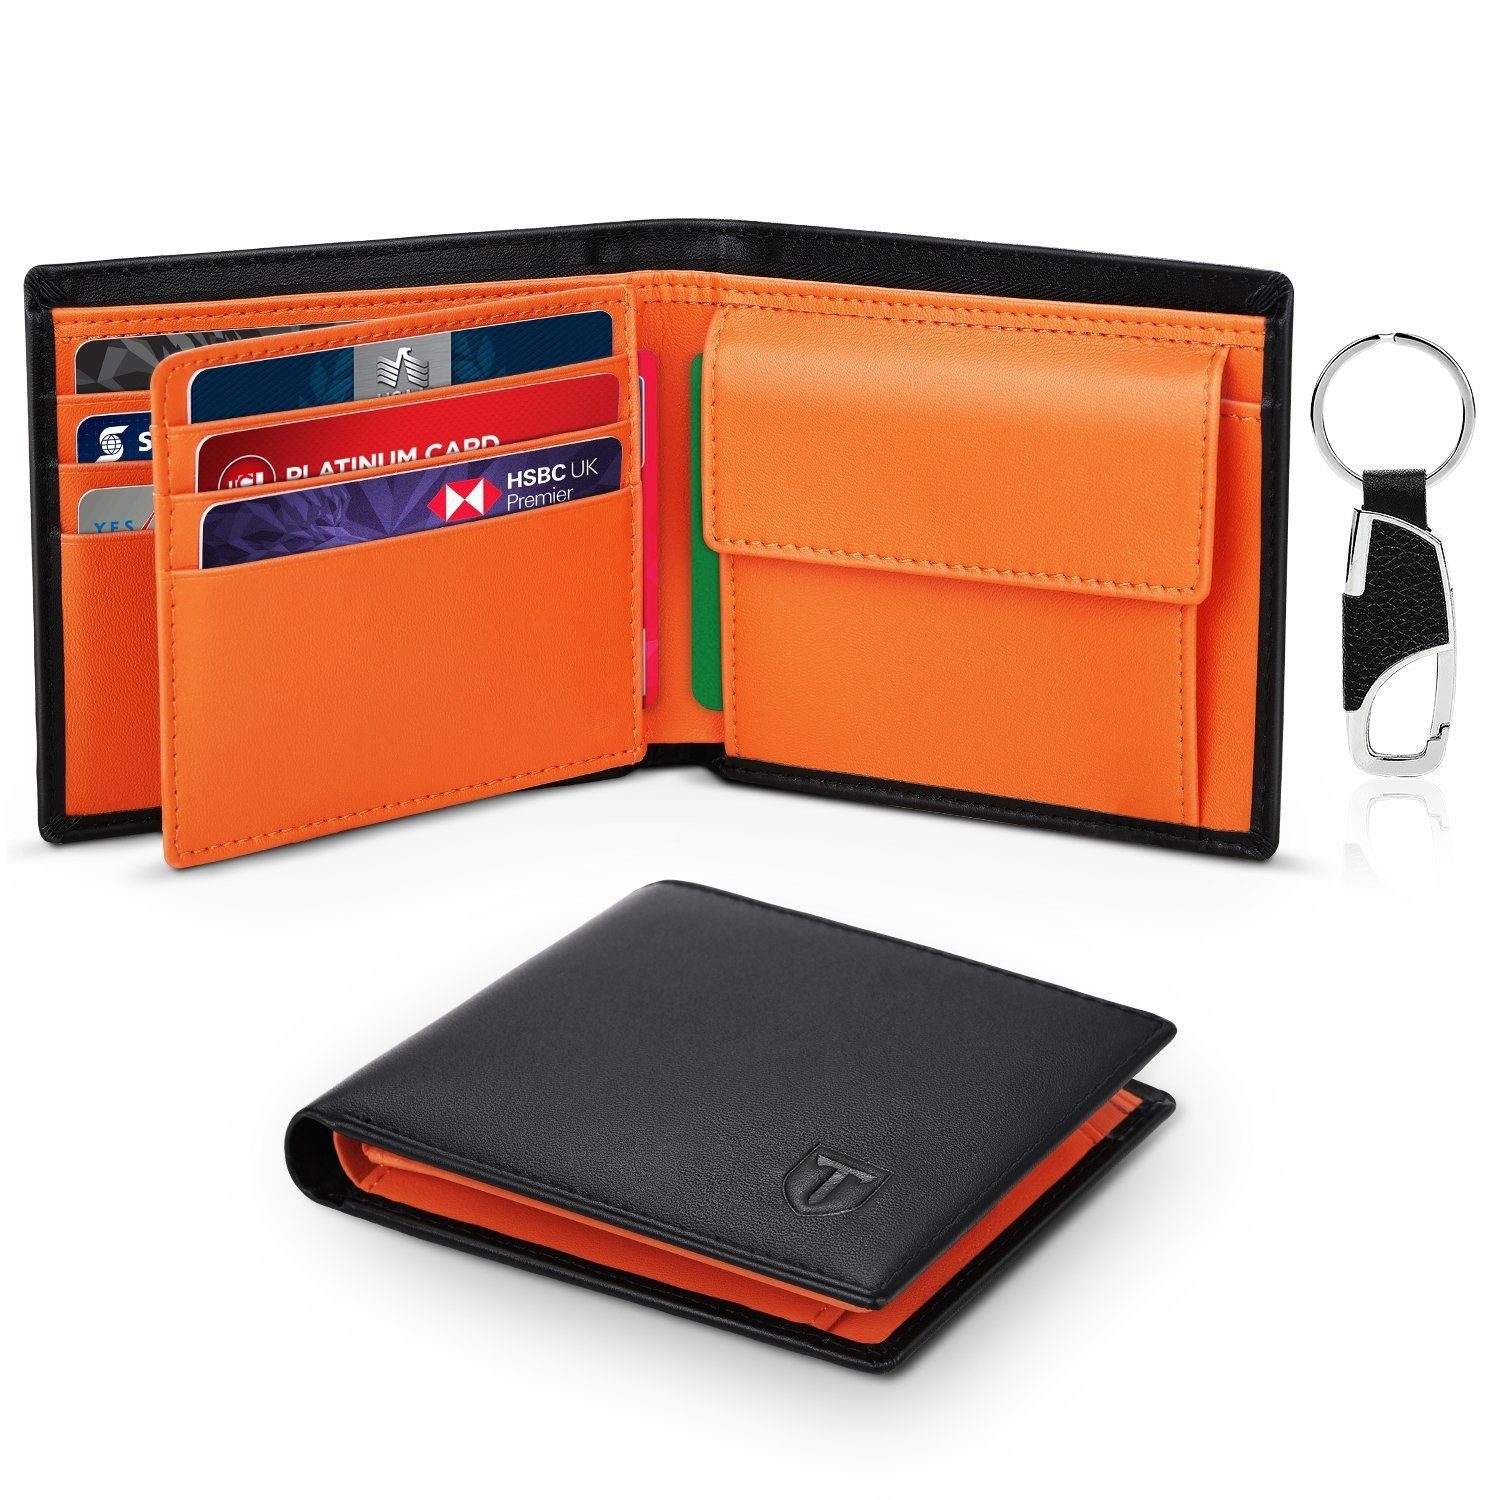 TEEHON Geldbörse Geldbörsen Herren aus Echtem Leder Orange-schwarz., Ein elegantes Portemonnaie mit RFID-Schutz